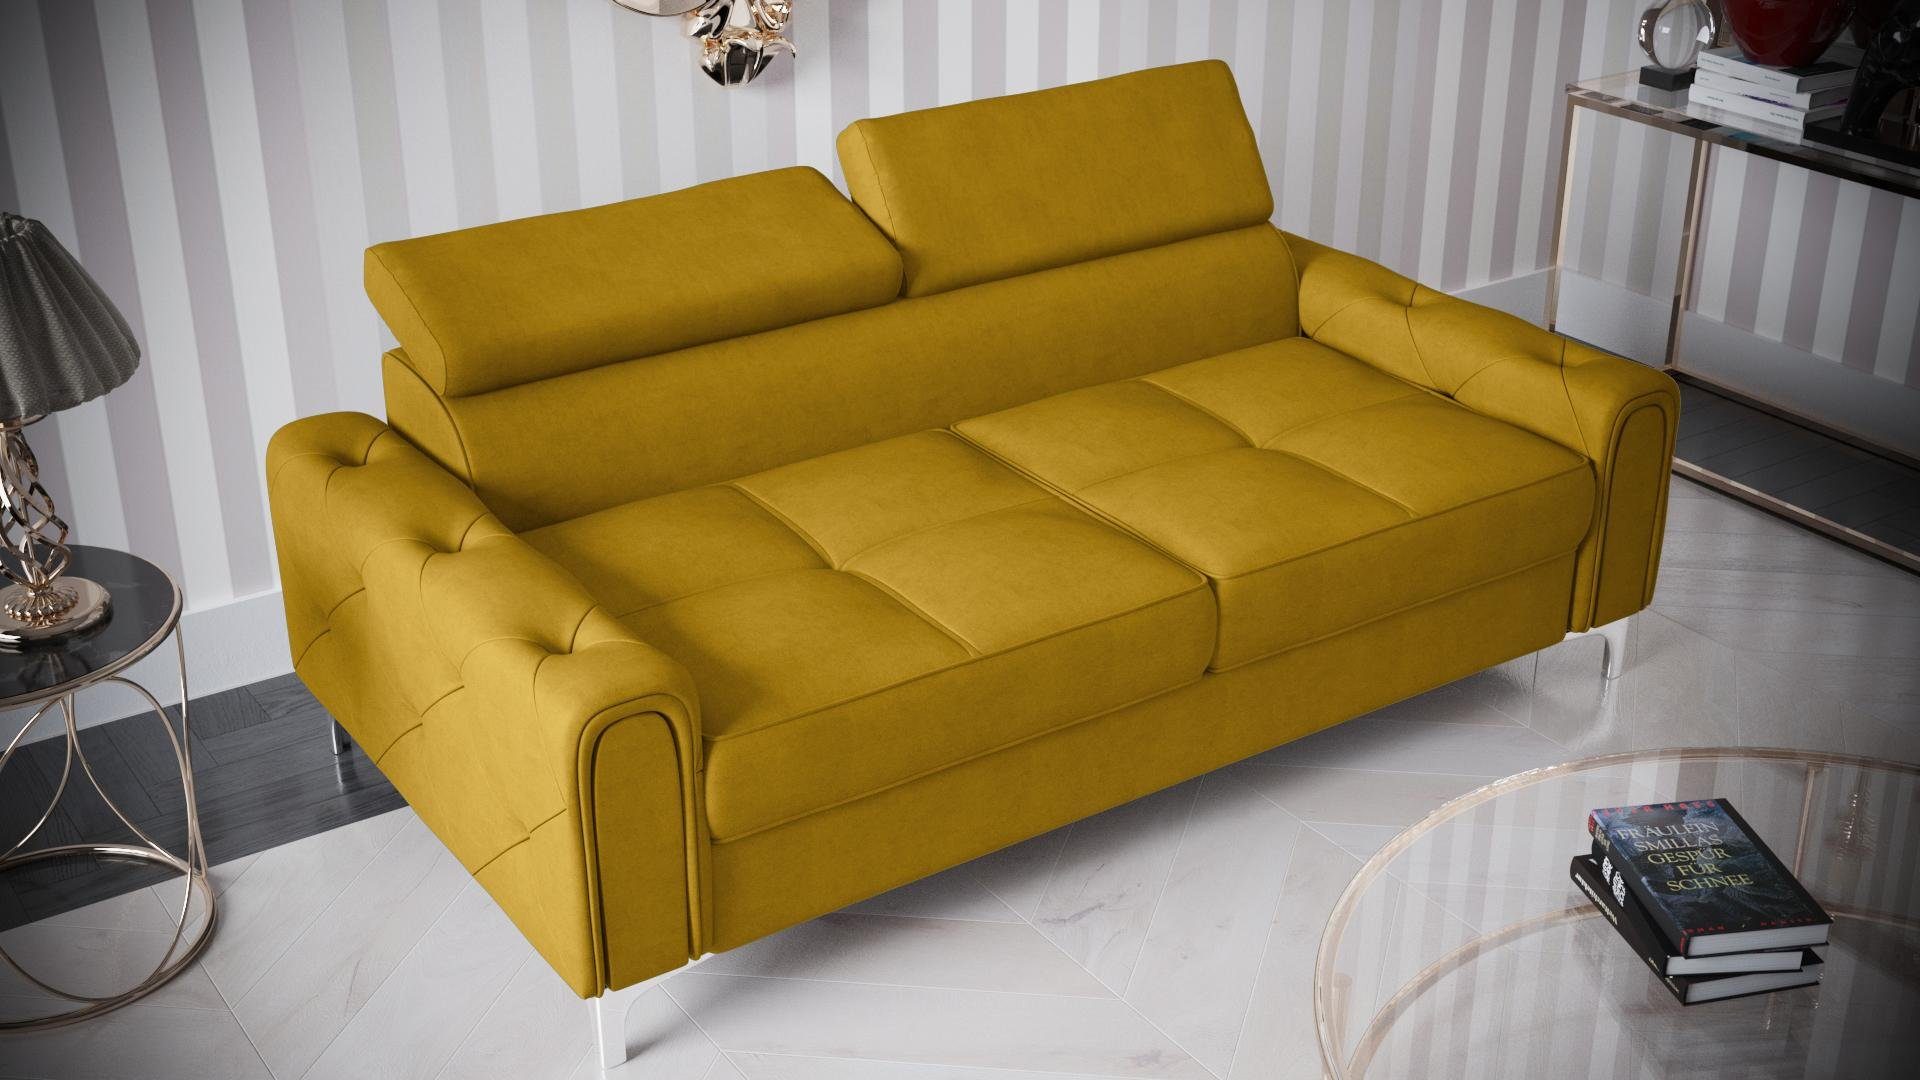 JVmoebel Sofa Designer 2-Sitzer Sofa Couchen Luxus Polster Möbel Sofa Couch Sitz, Made in Europe Gelb | Gelb | Gelb